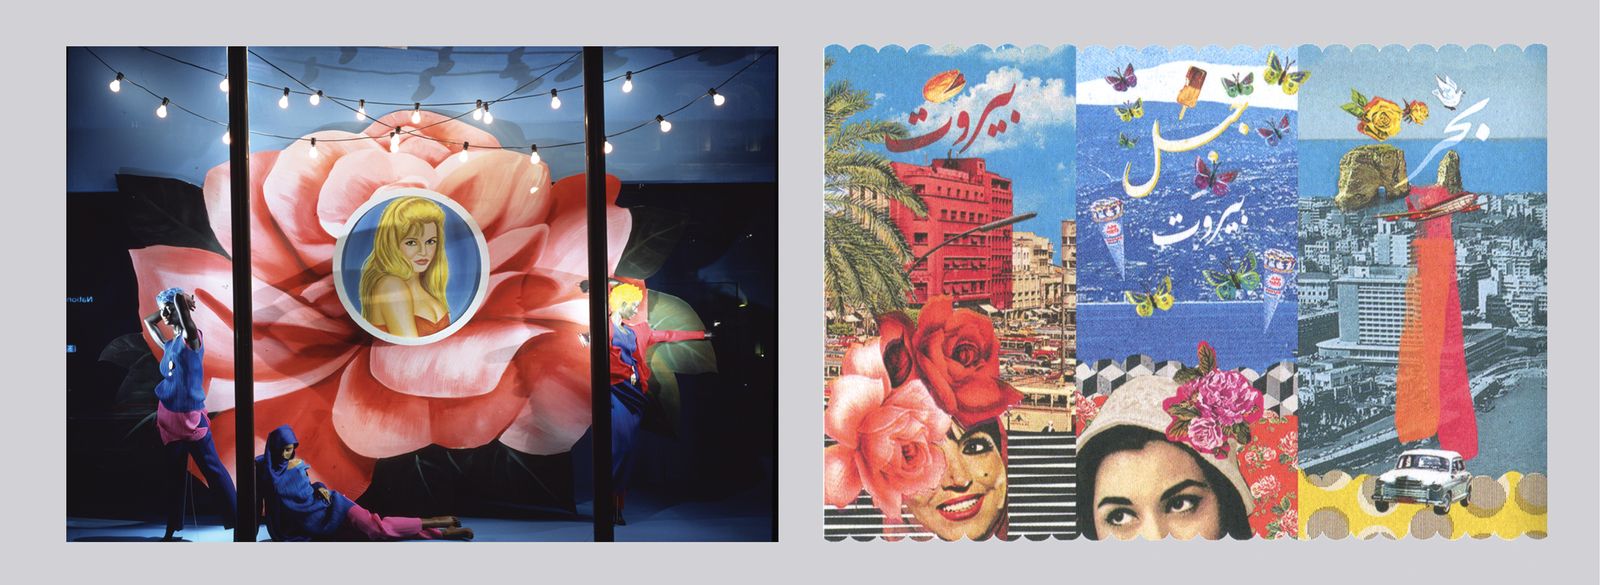 Designs des Rana Salam Studio. Links: Harvey Nichols Einkaufsfenster, 1995; rechts: Design für Bassam Fattouh-Kosmetik, 2013 (Quelle: AUC Press)